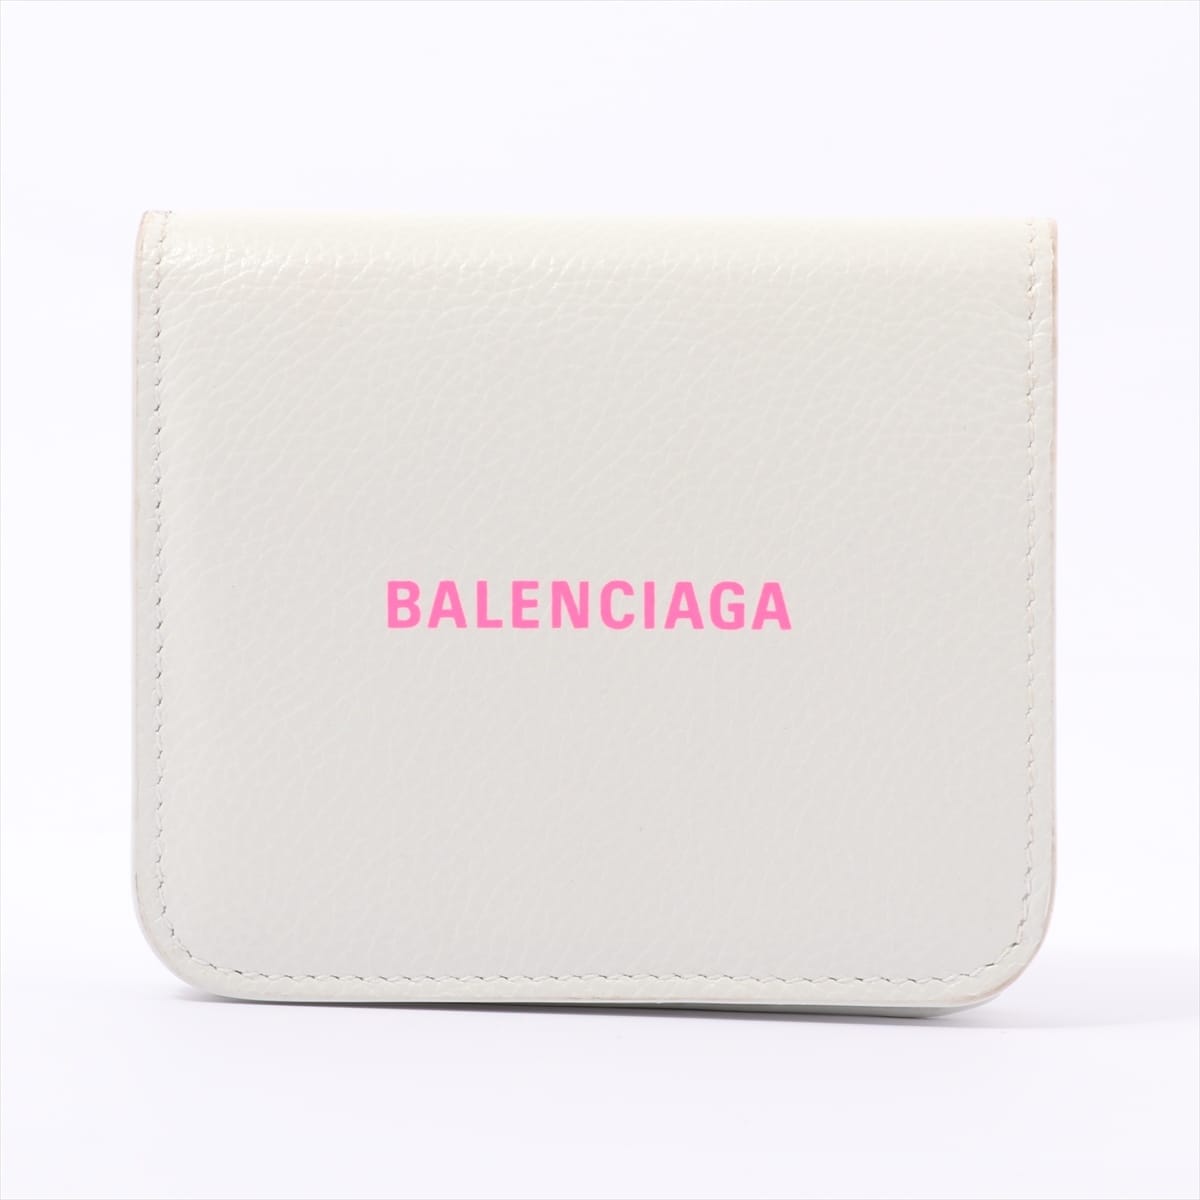 Balenciaga Logo 594216 Leather Wallet White